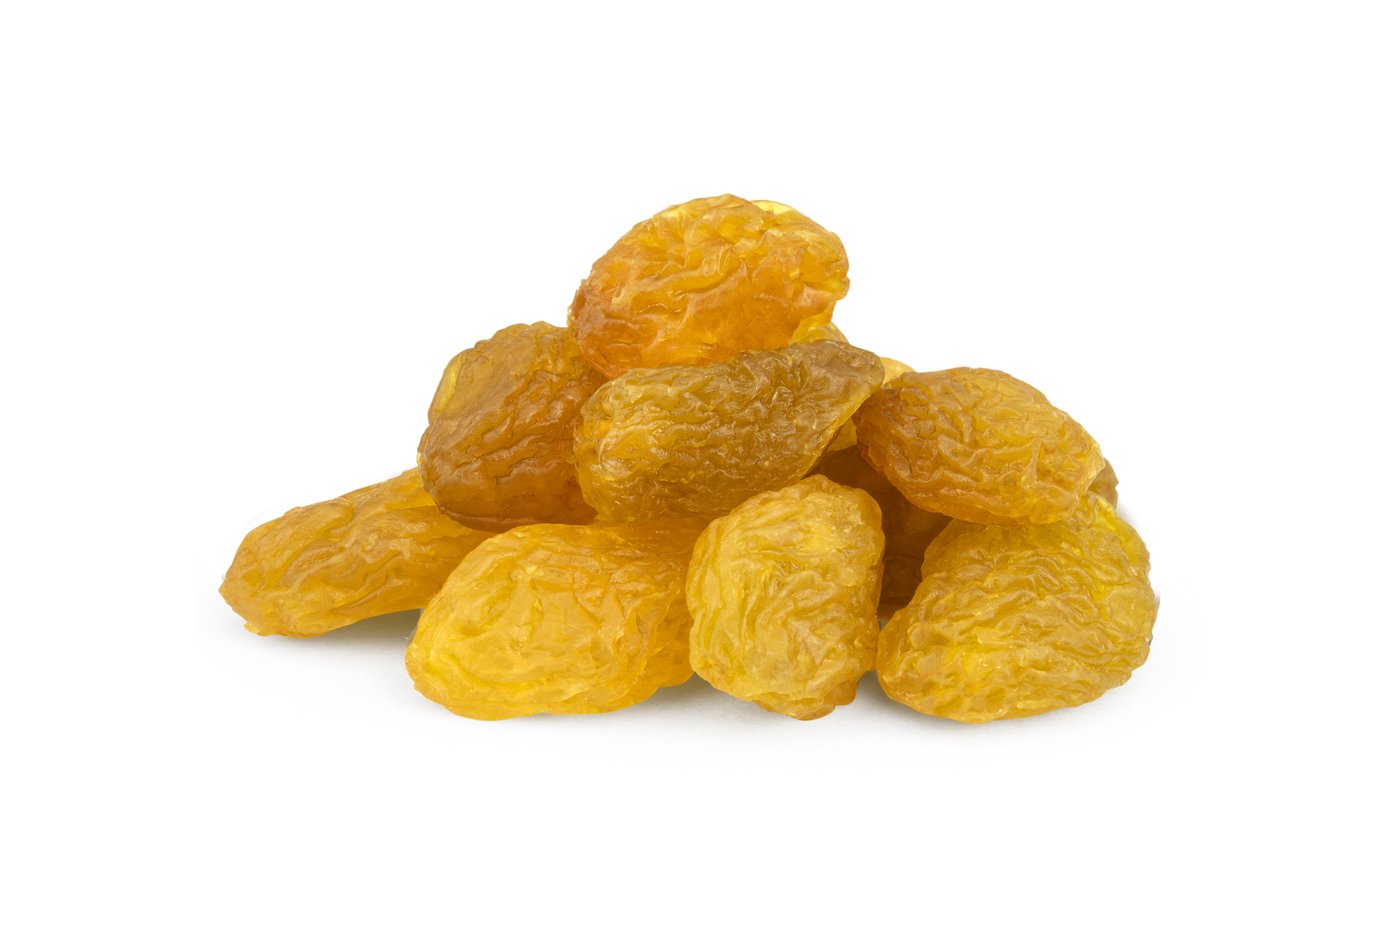 Jumbo Golden Raisins image zoom